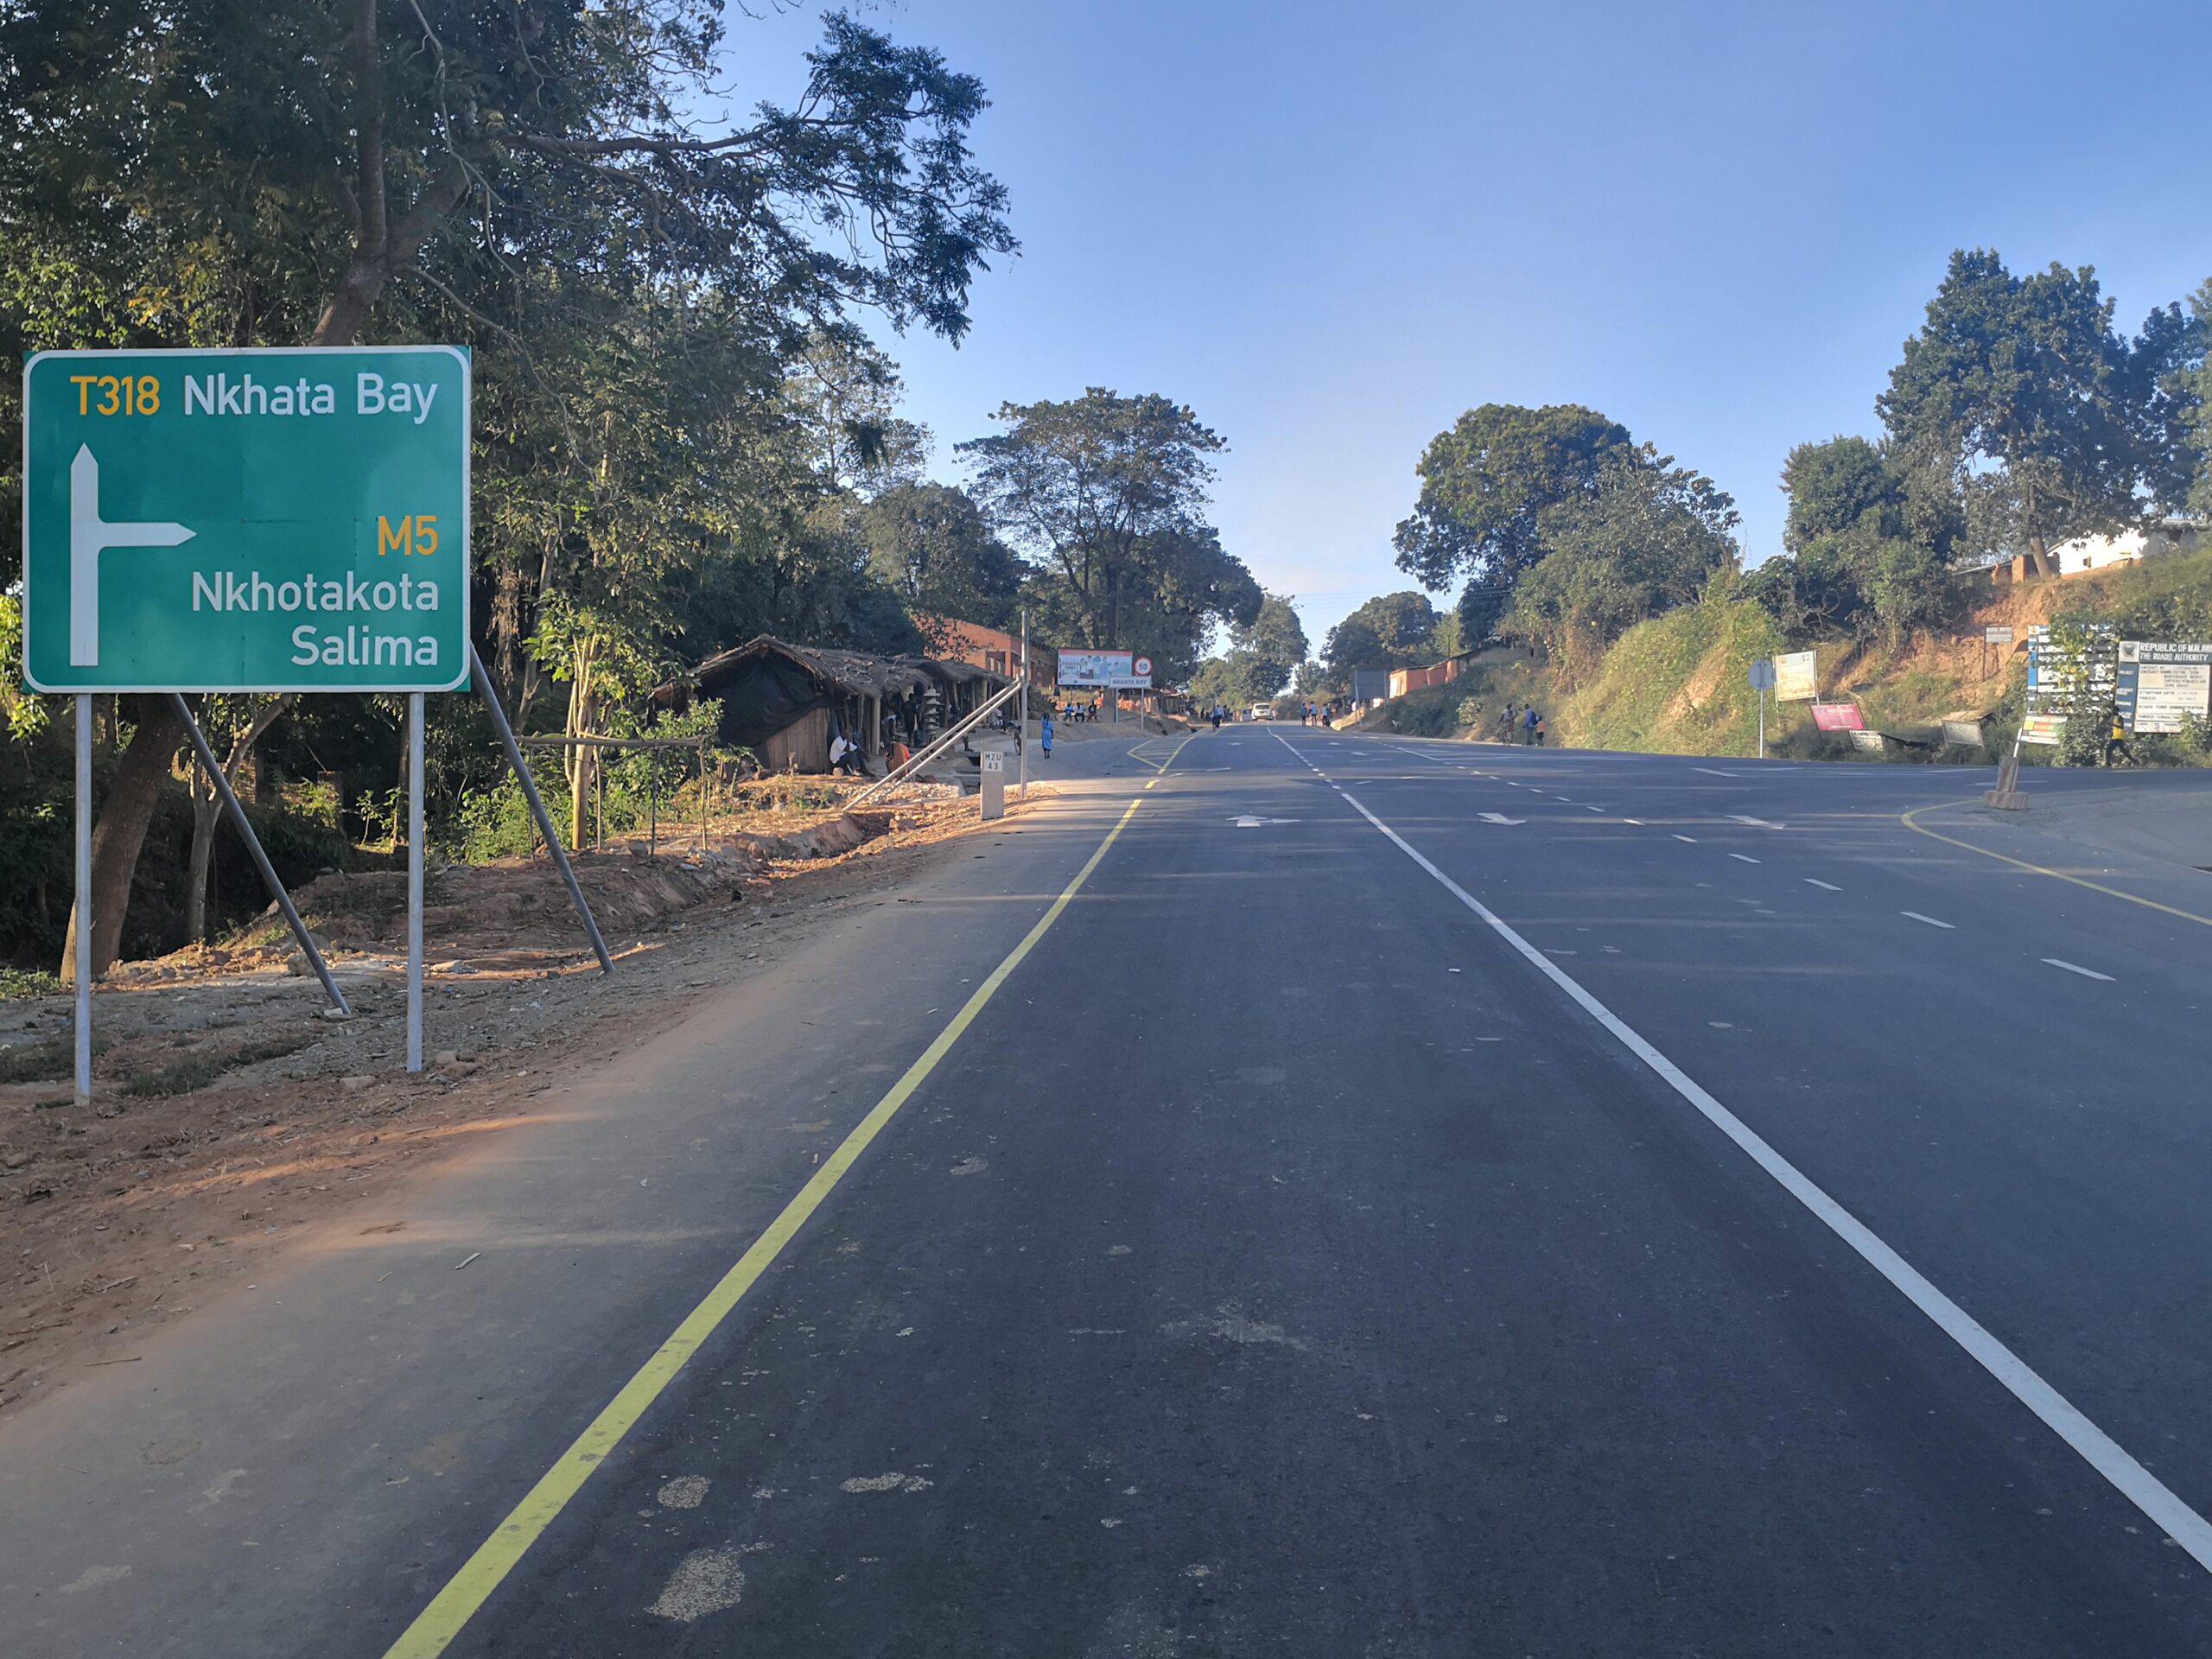 Malawi Road Traffic Aptitude Test